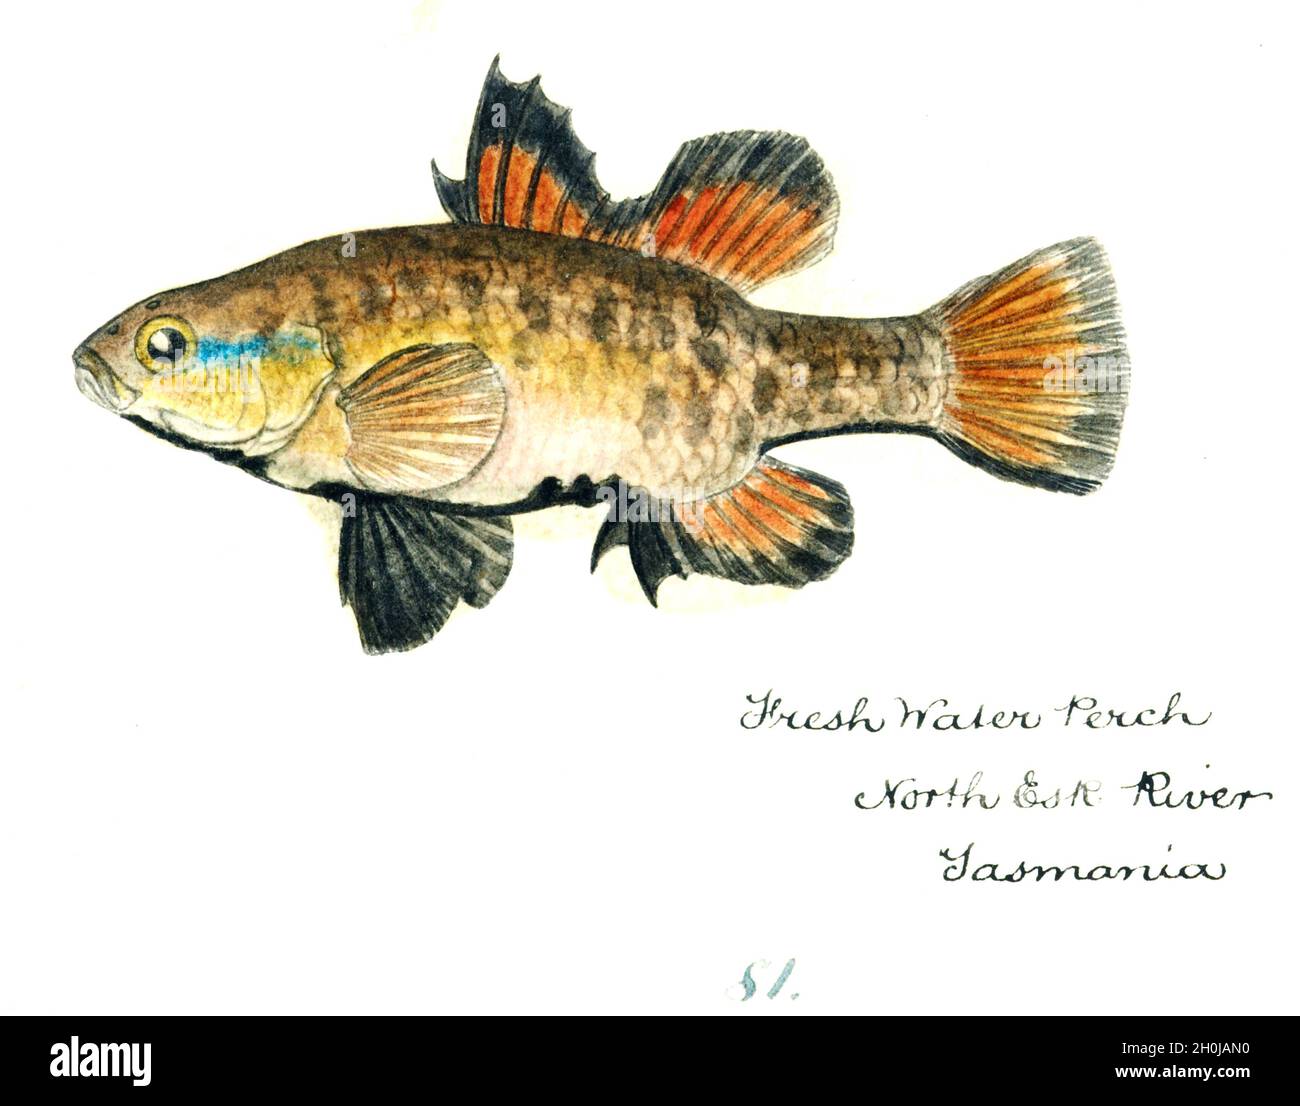 Frank Edward Clarke illustration de poissons d'époque - Perch d'eau douce Banque D'Images